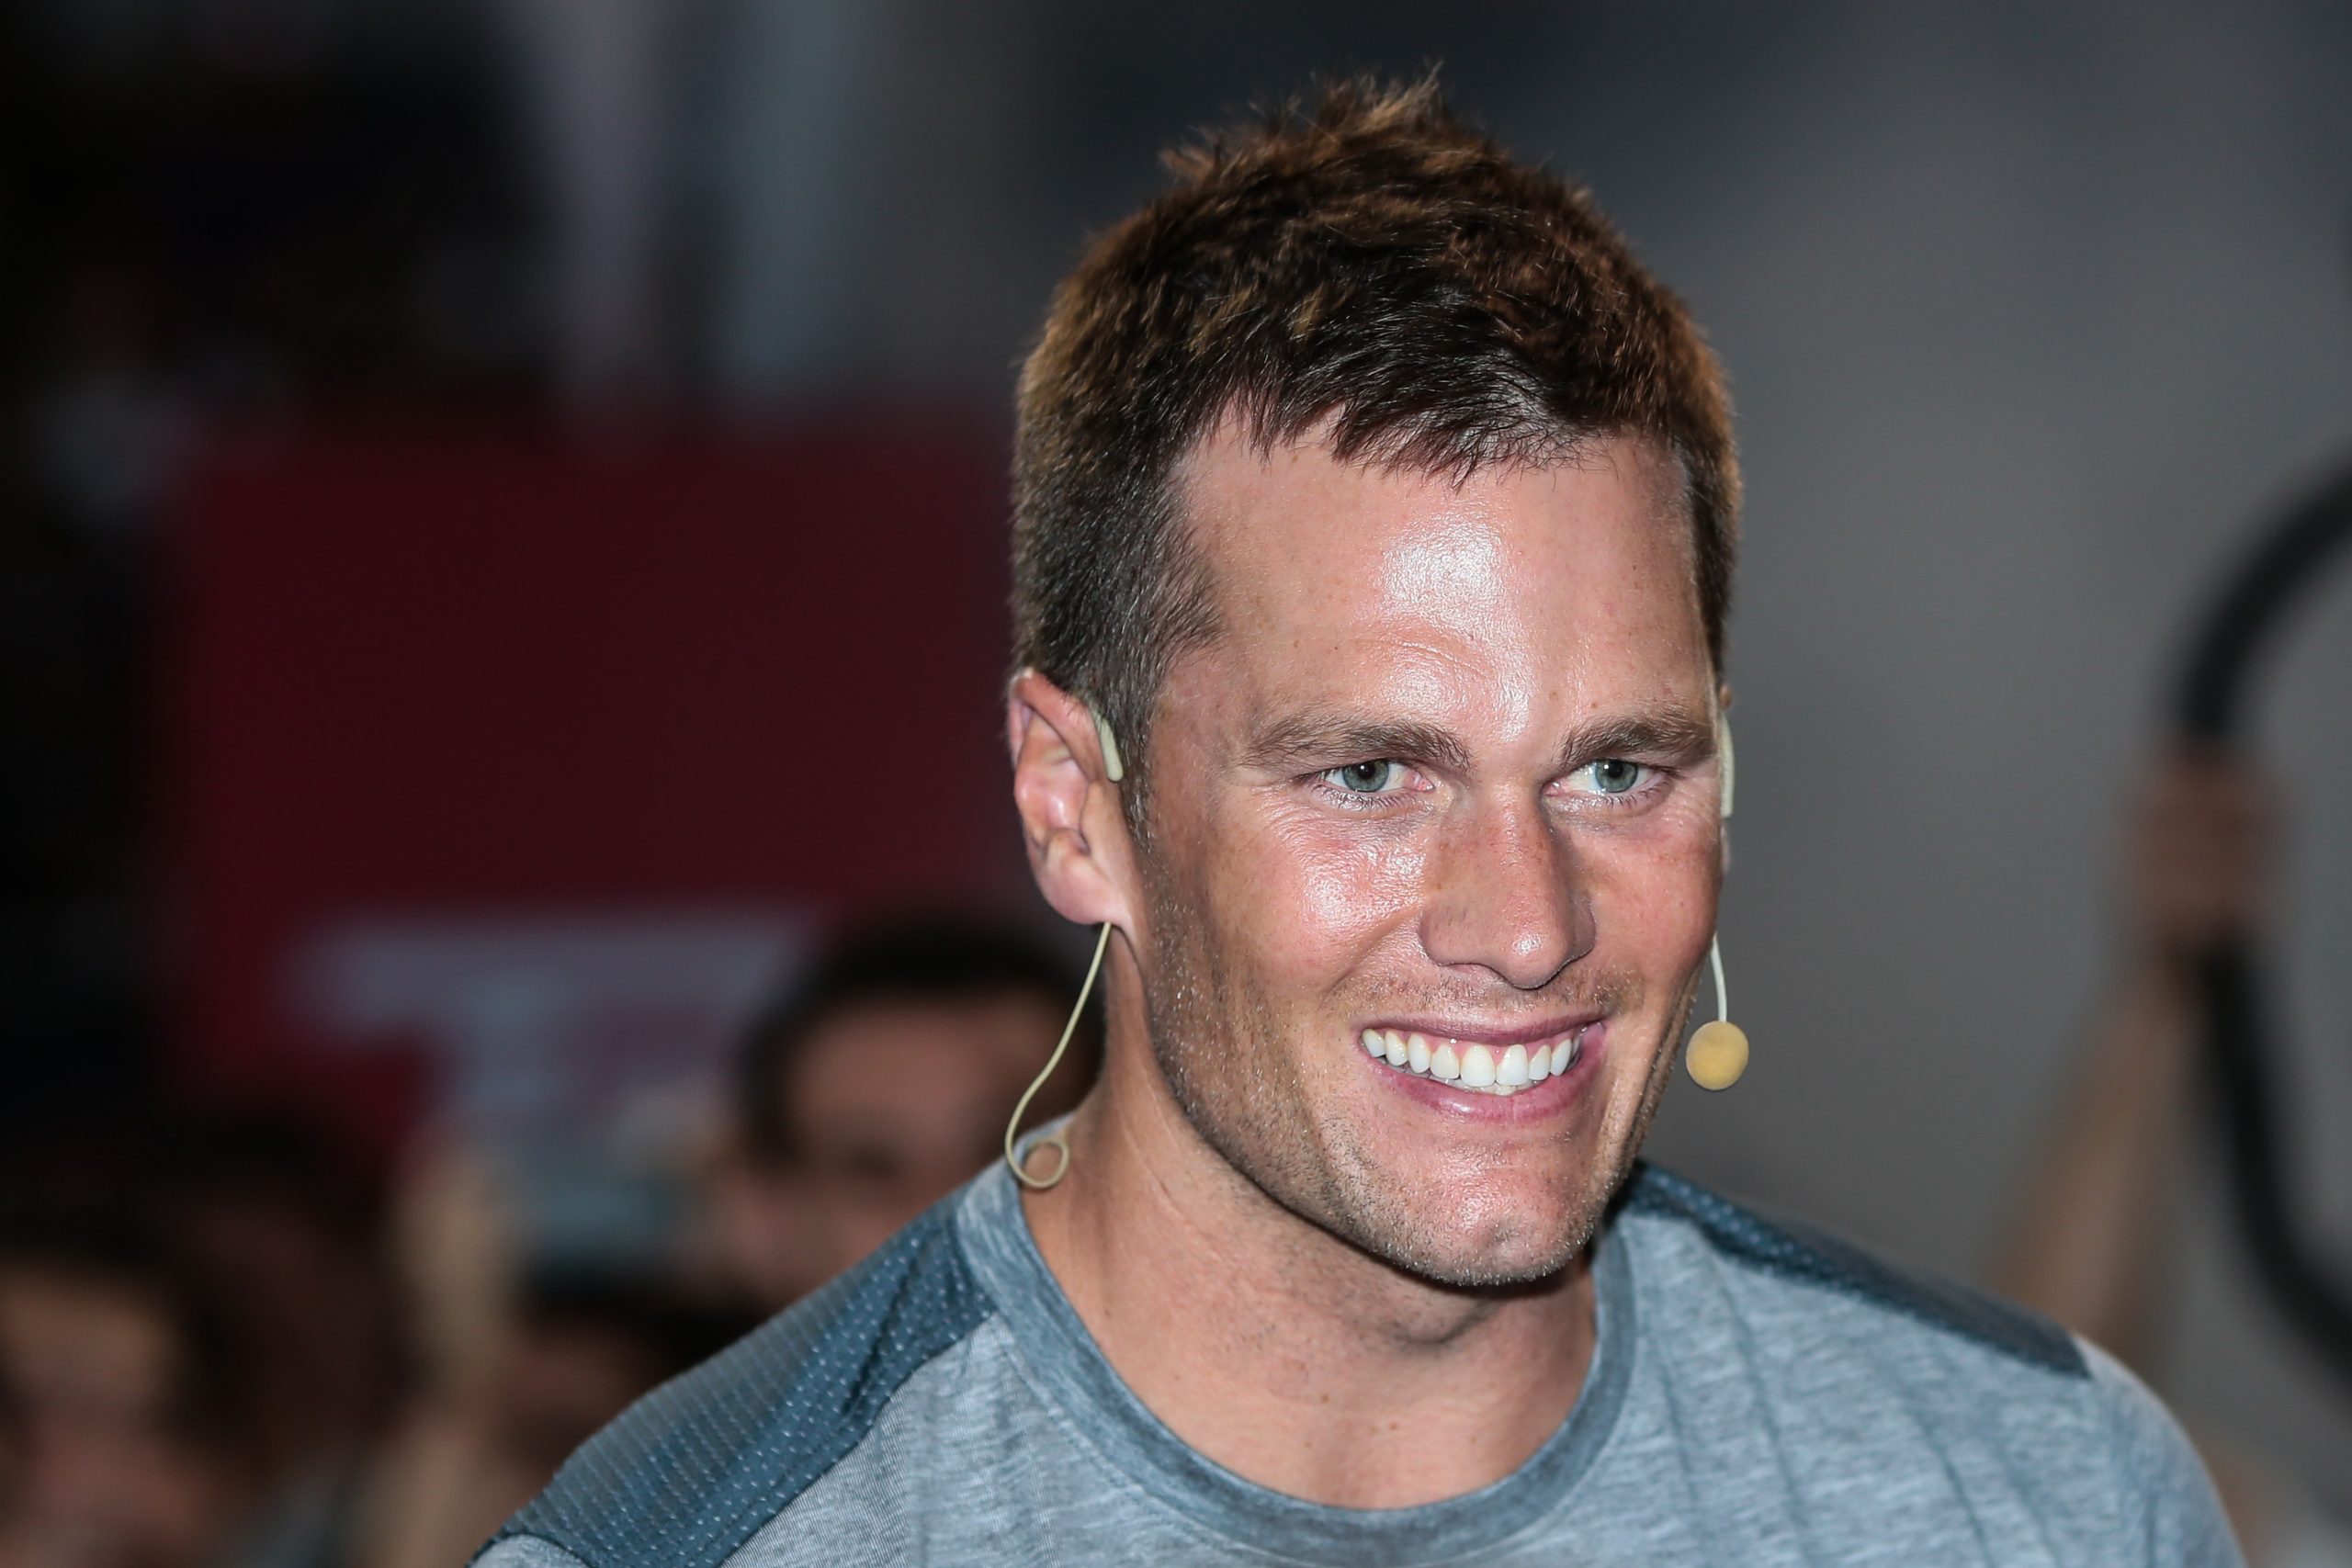 FootballR - NFL - Ein Mann, Tom Brady, lächelt vor einer Menschenmenge bei einer offiziellen Veranstaltung.